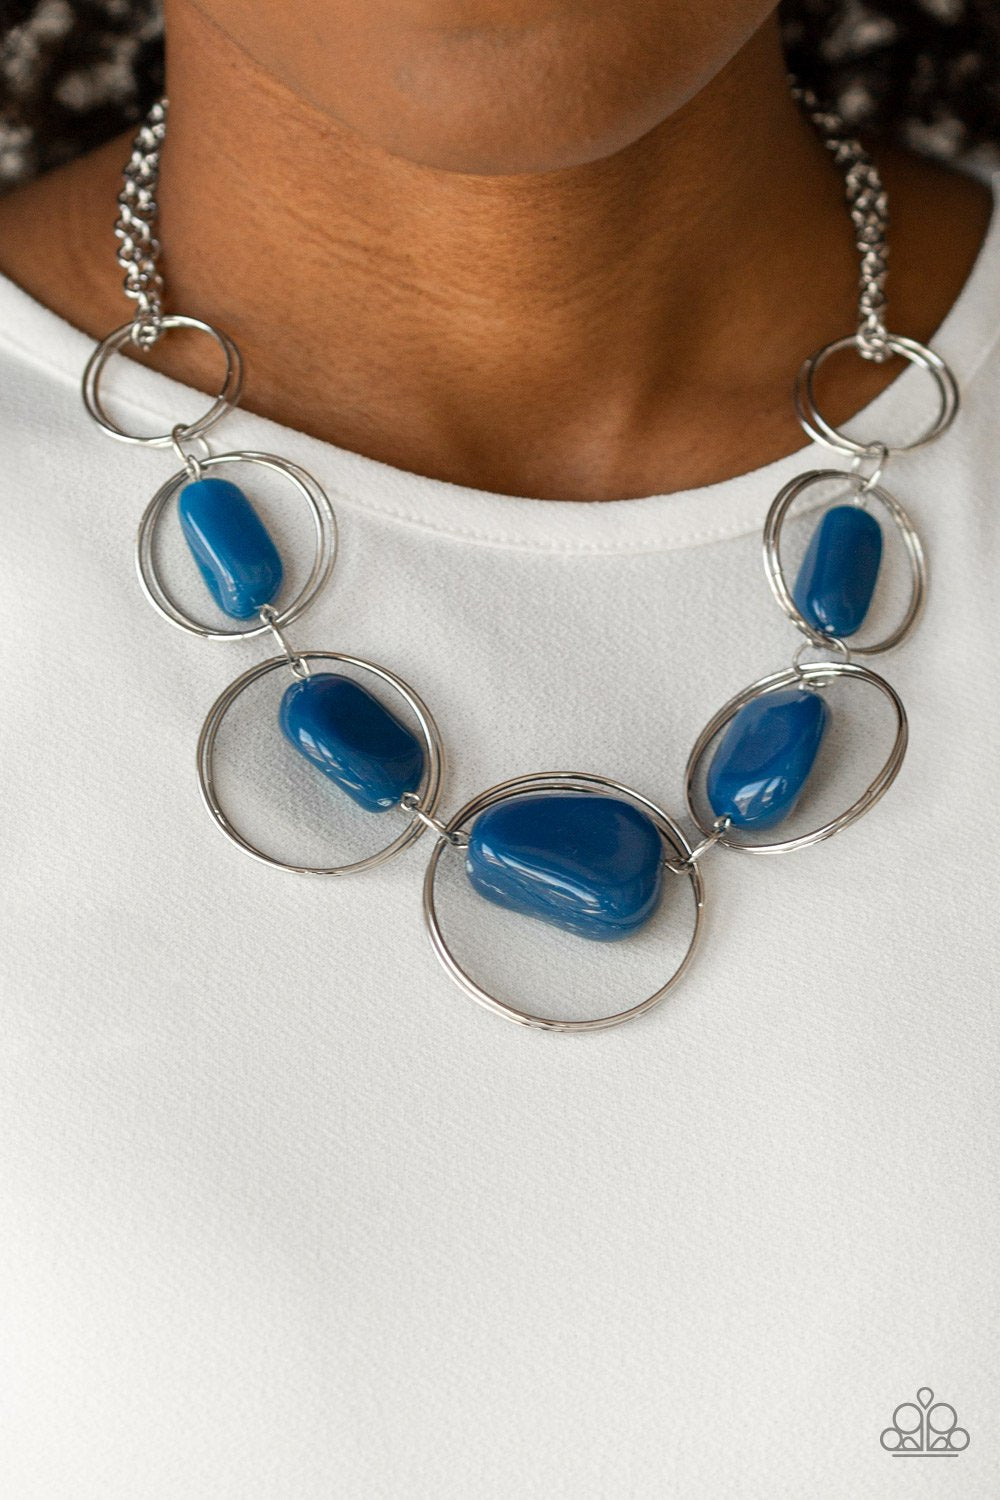 Travel Log-blue-Paparazzi necklace